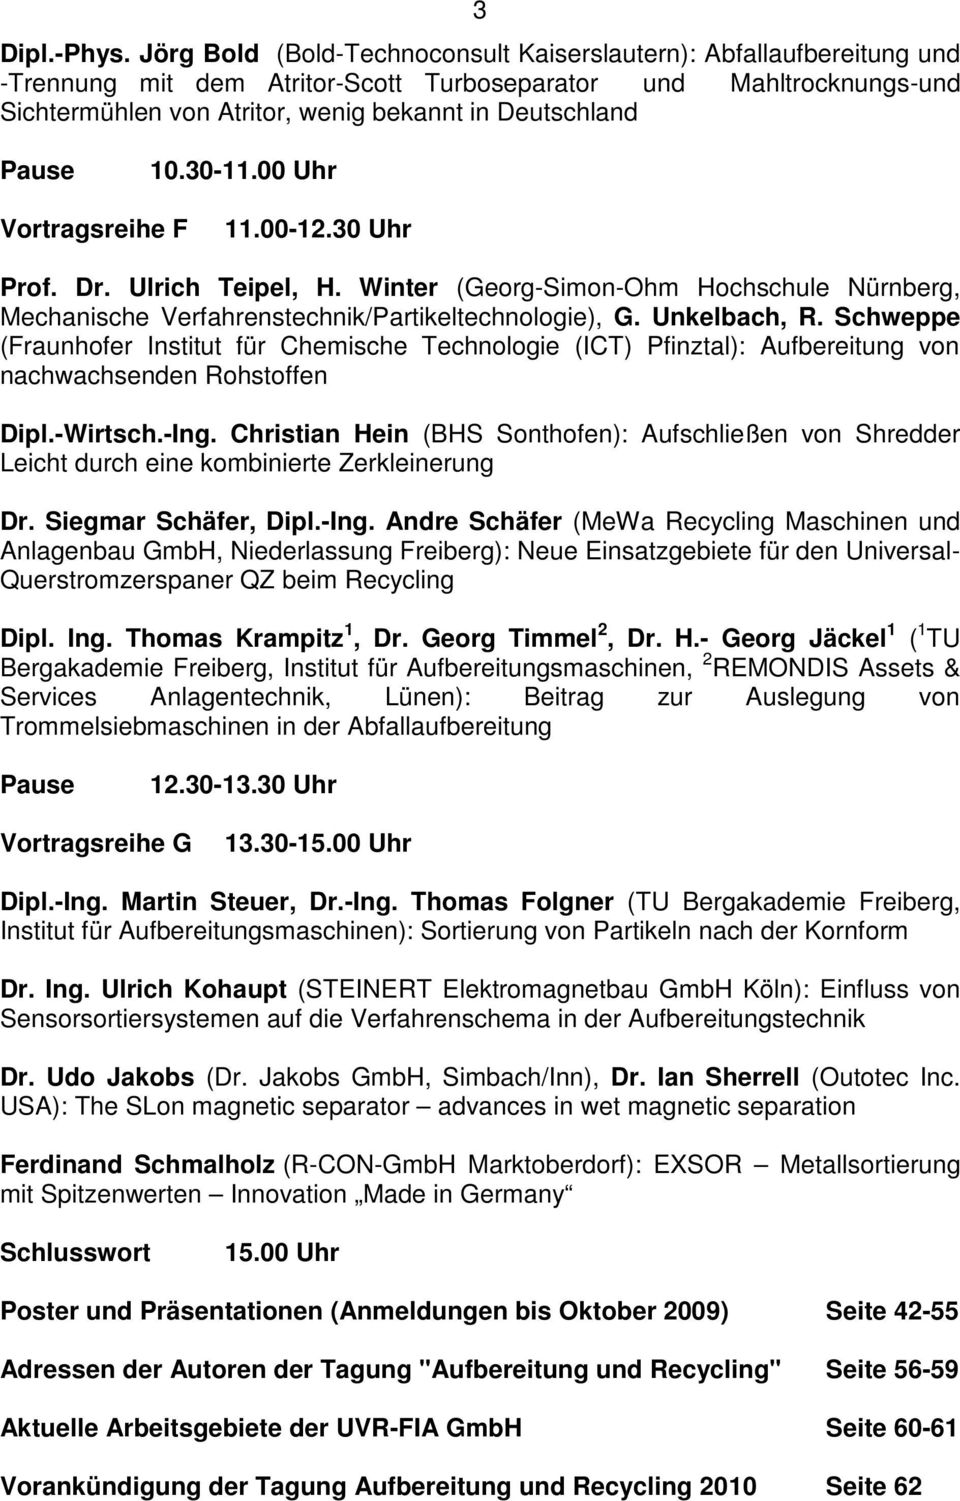 Pause 10.30-11.00 Uhr Vortragsreihe F 11.00-12.30 Uhr Prof. Dr. Ulrich Teipel, H. Winter (Georg-Simon-Ohm Hochschule Nürnberg, Mechanische Verfahrenstechnik/Partikeltechnologie), G. Unkelbach, R.